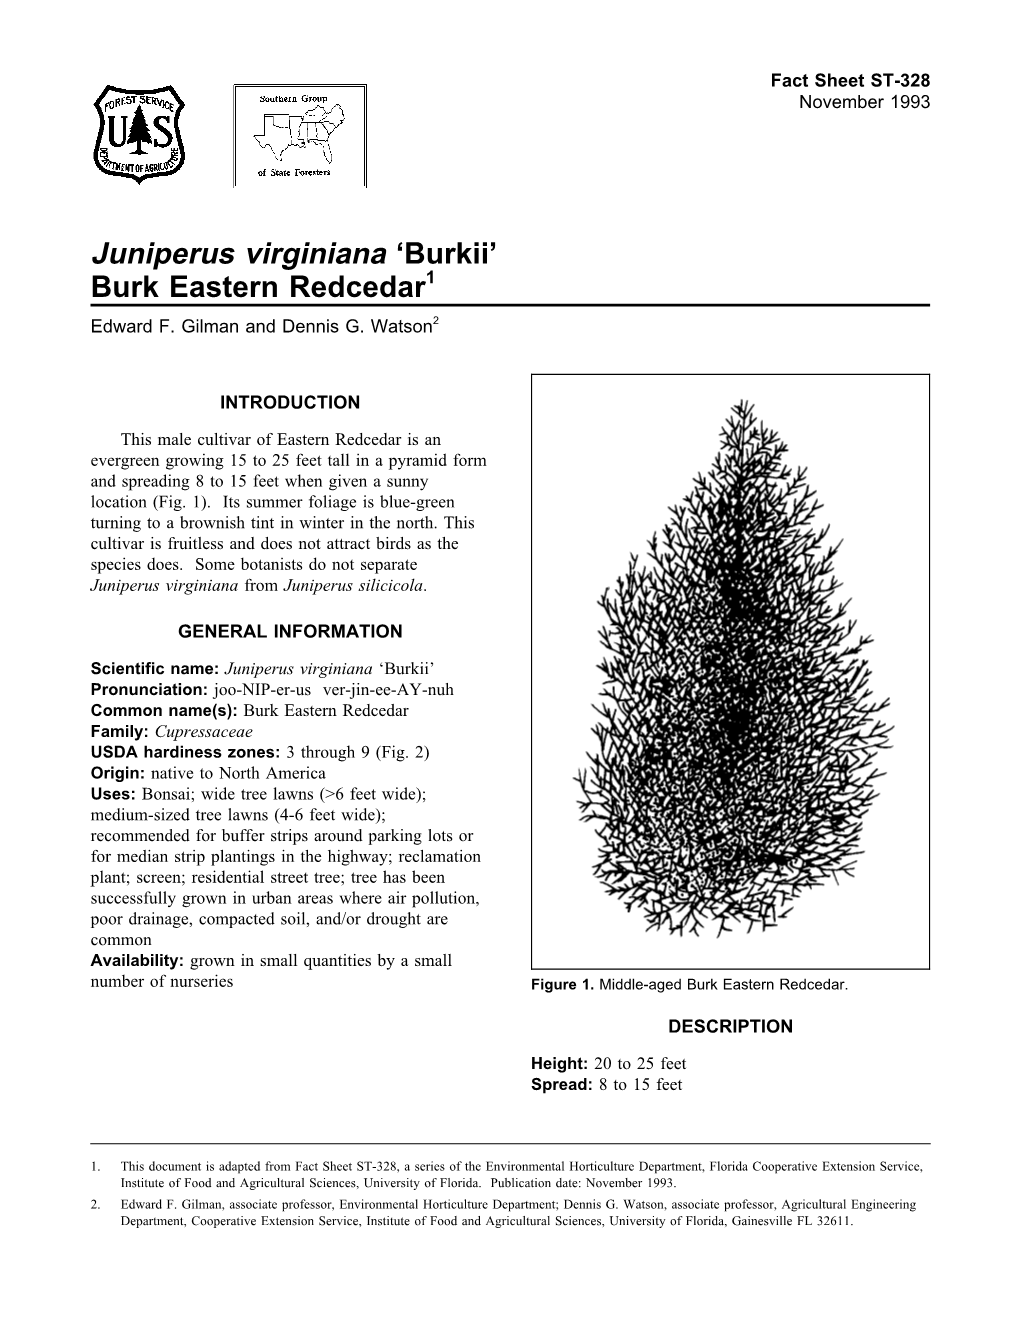 Juniperus Virginiana 'Burkii'